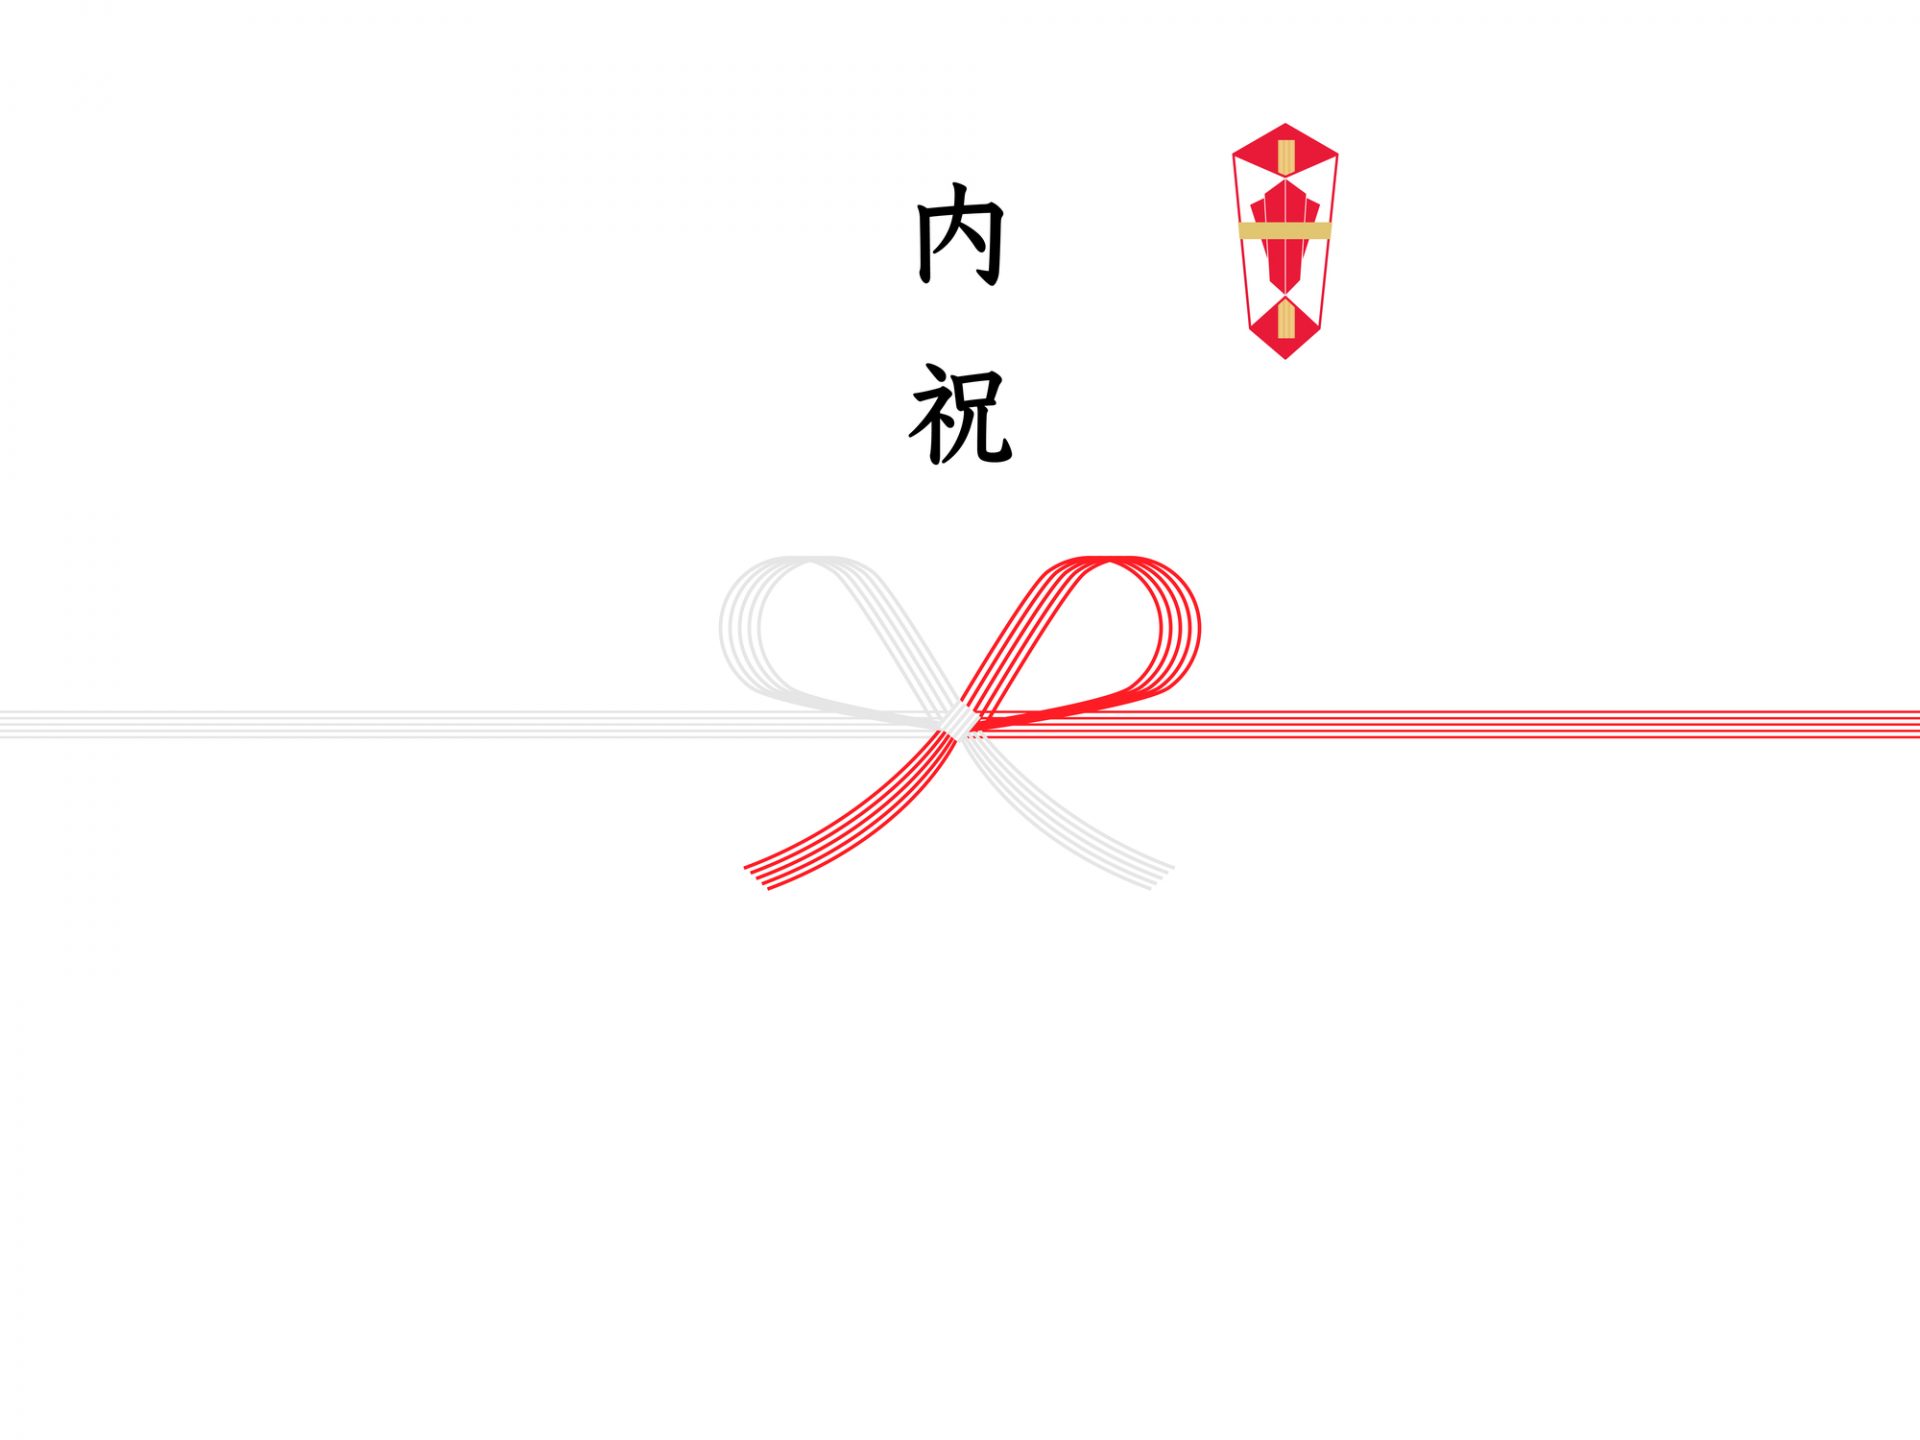 のし紙画像：赤銀蝶結び水引の上に「内祝」その右横に熨斗画像が入っている